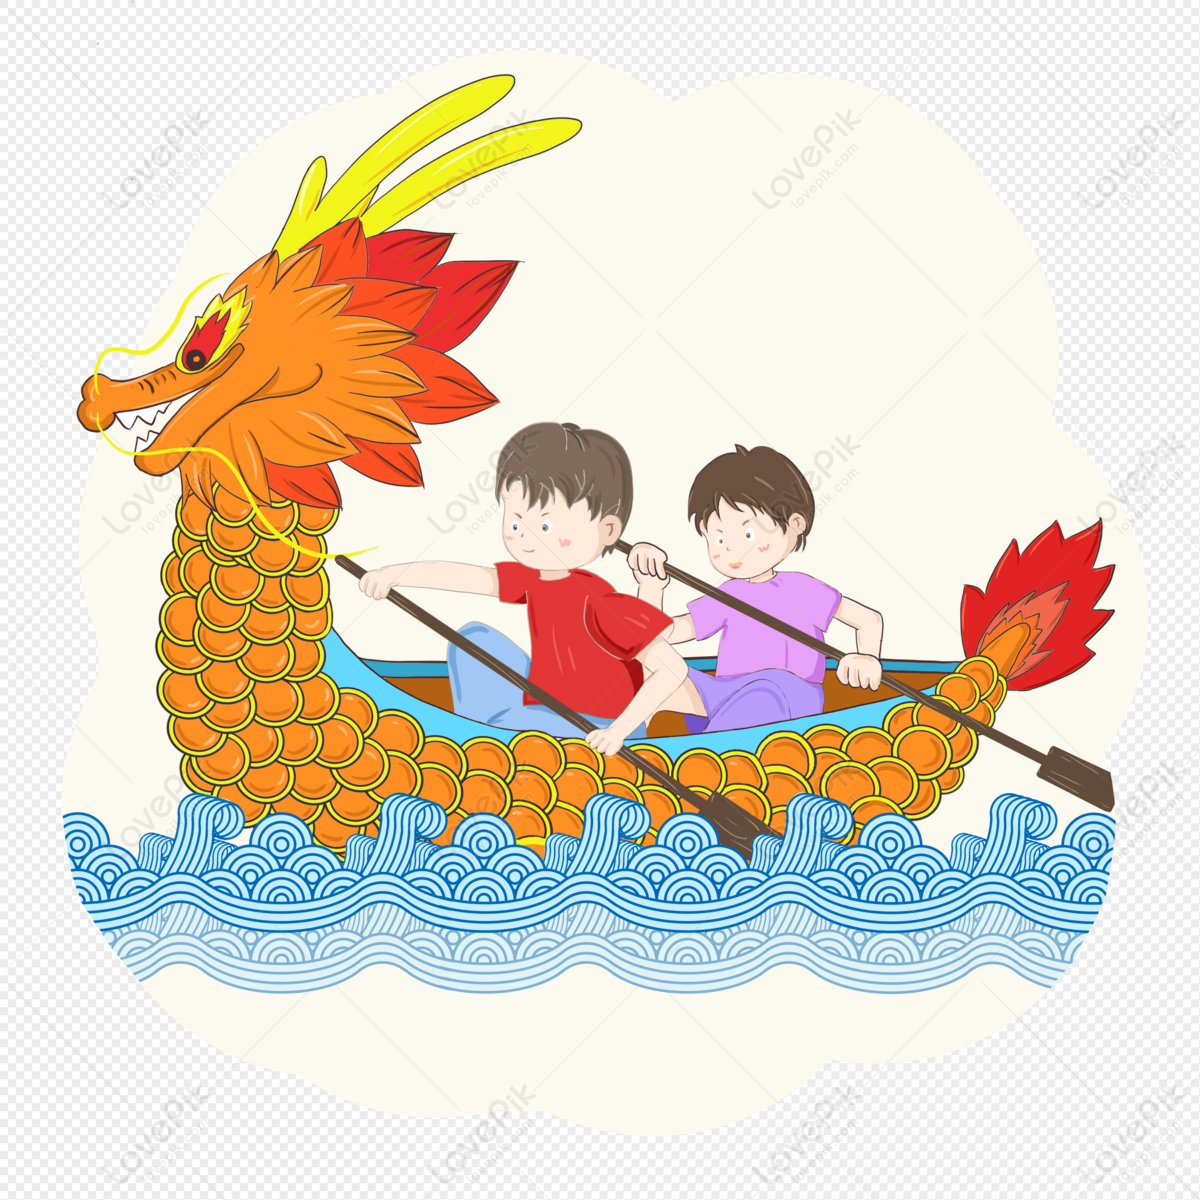 Khám phá hình ảnh Thuyền Rồng PNG trên trang web của chúng tôi. Thuyền Rồng chỉ là một trong những biểu tượng đầy vẻ đẹp và nghệ thuật của văn hóa Á Đông. Những chi tiết tinh tế này đem đến cho bạn cảm giác vô cùng sống động chỉ bằng một cái nhìn.